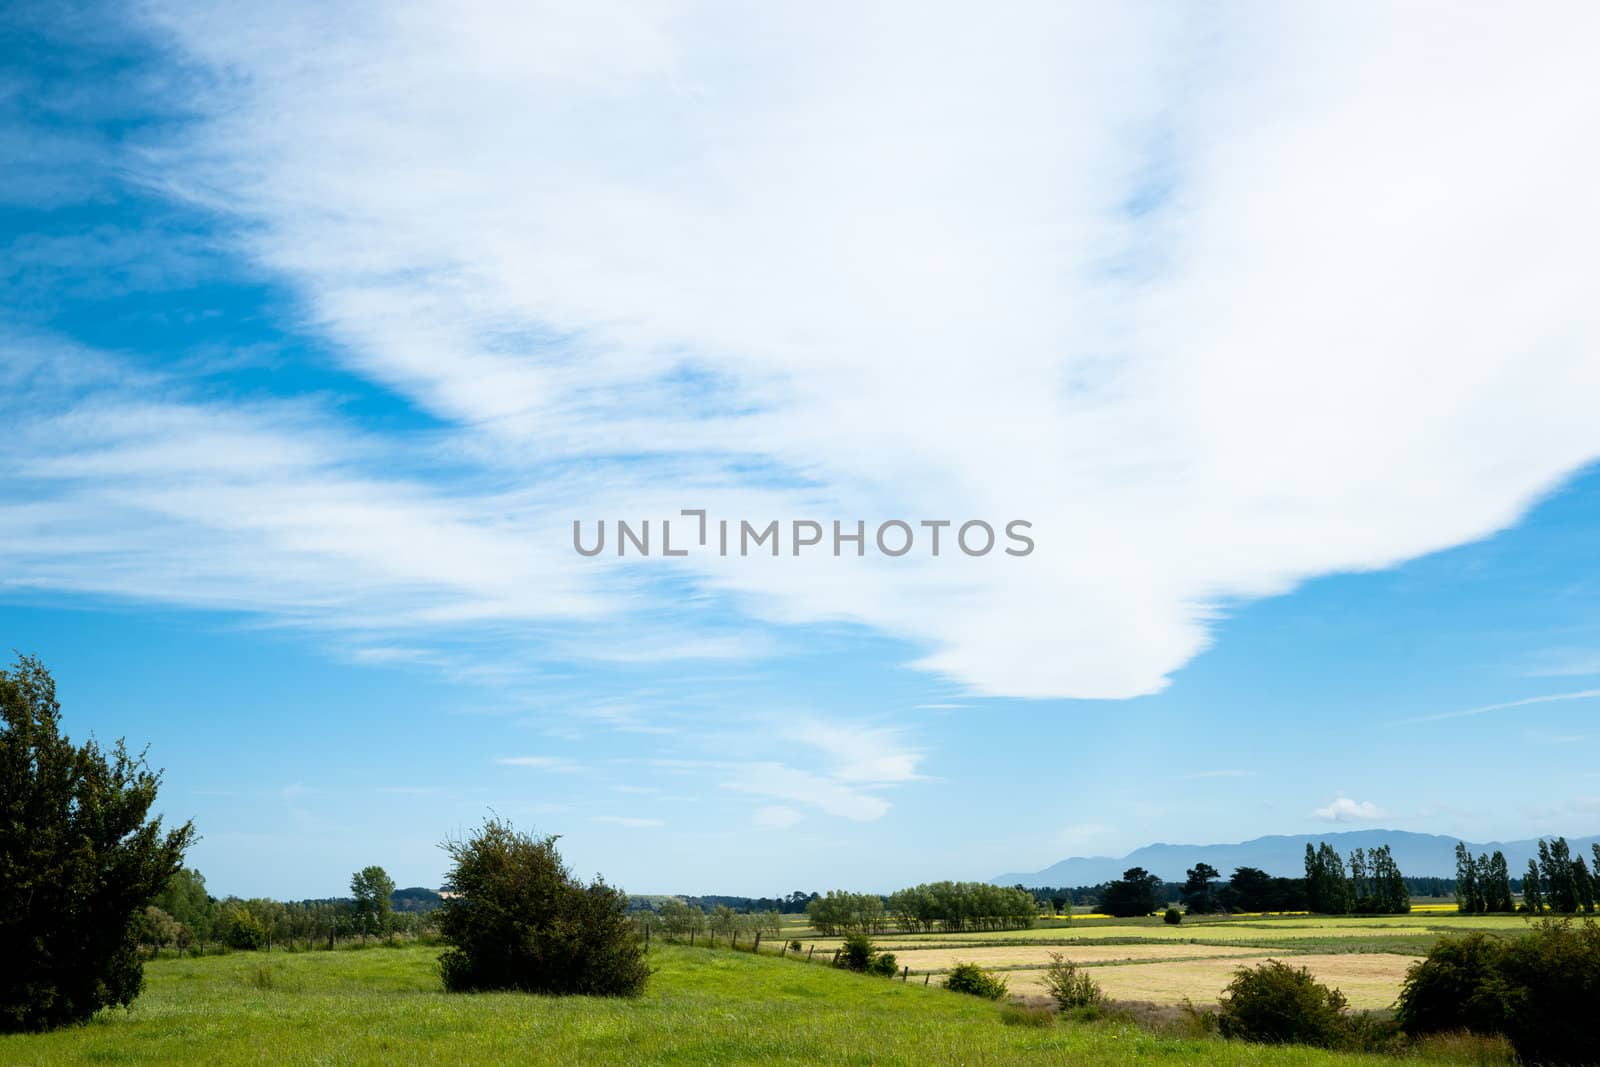 White cloud patterns above a rural landscape